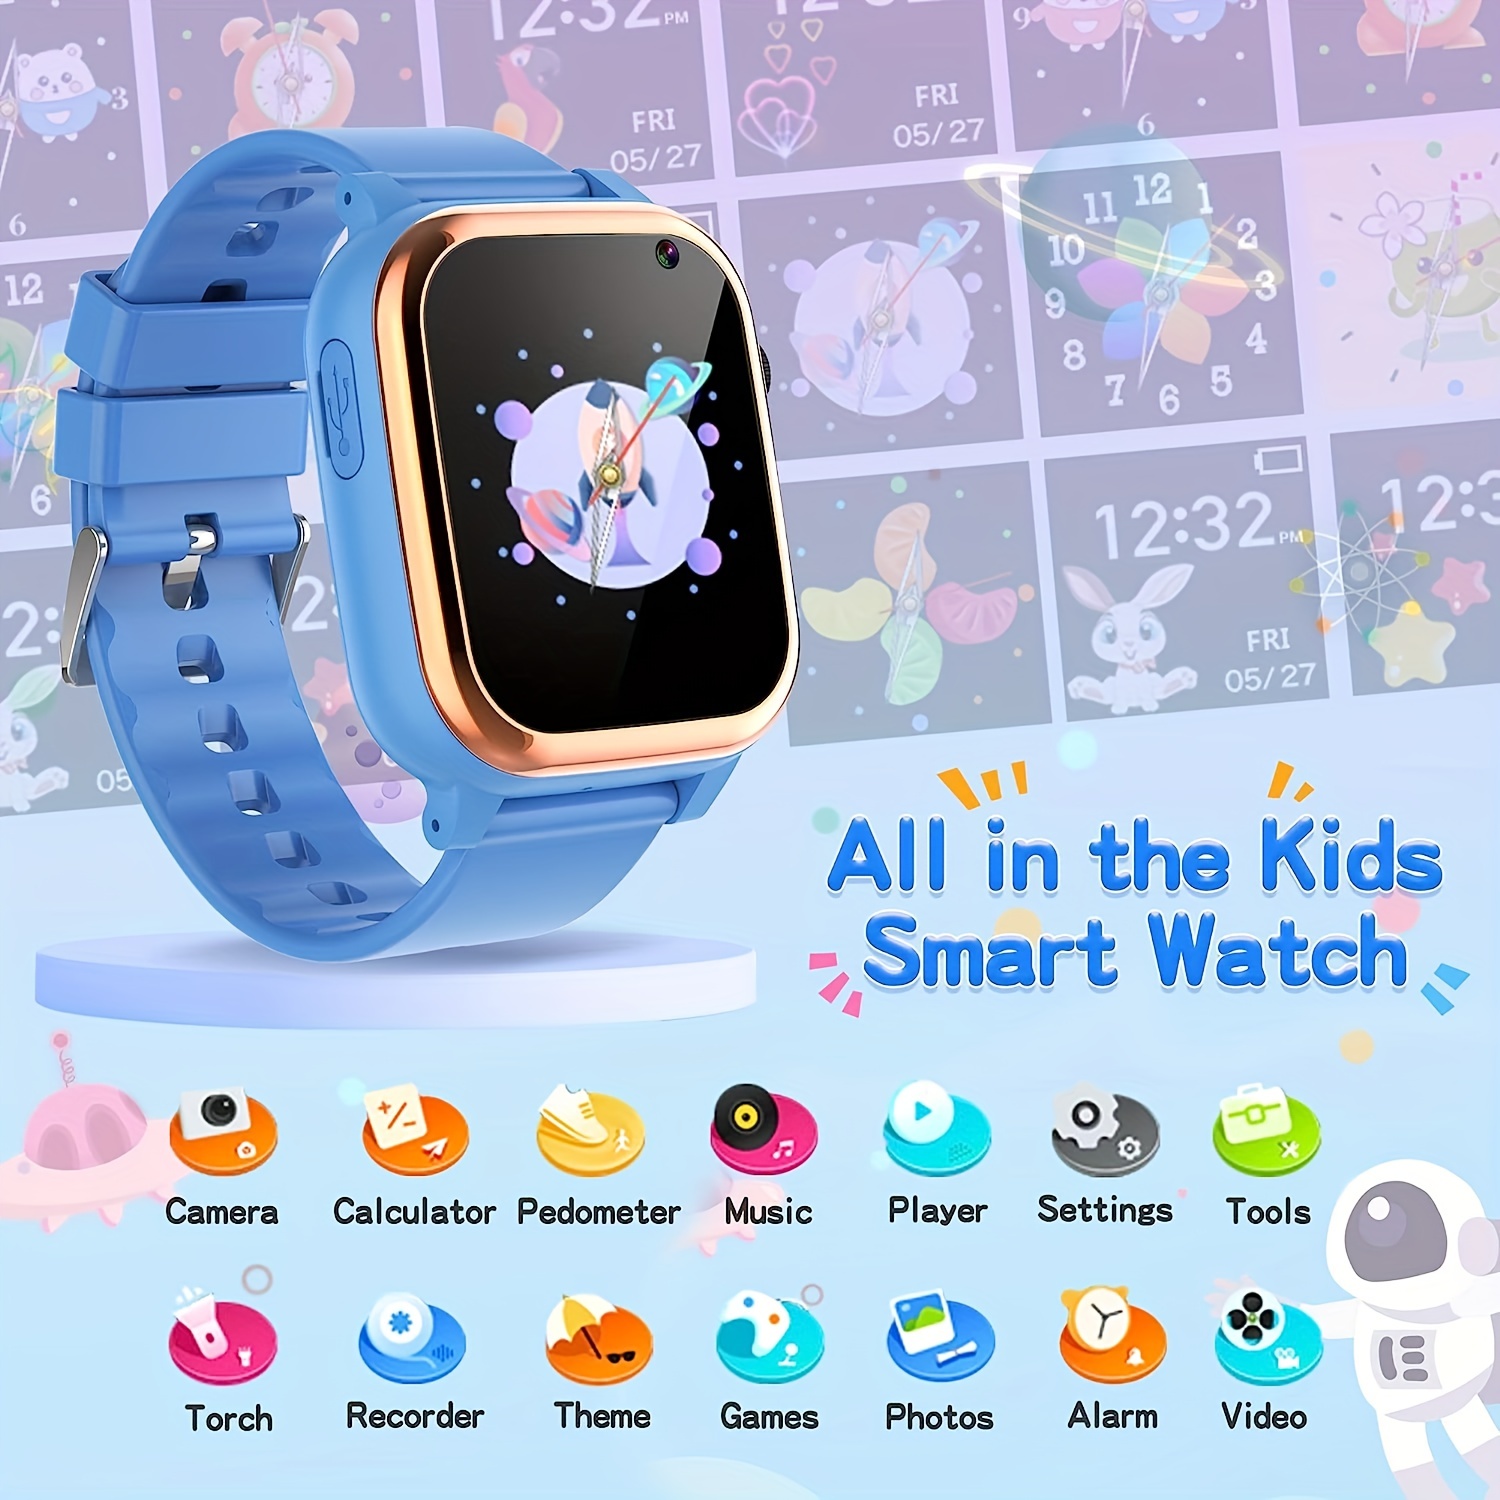  Reloj inteligente para niños y niñas, regalos para niños de 4 a 10  años, doble cámara, pantalla táctil, reloj inteligente para niños con 18  juegos, reproductor de video musical, reloj despertador